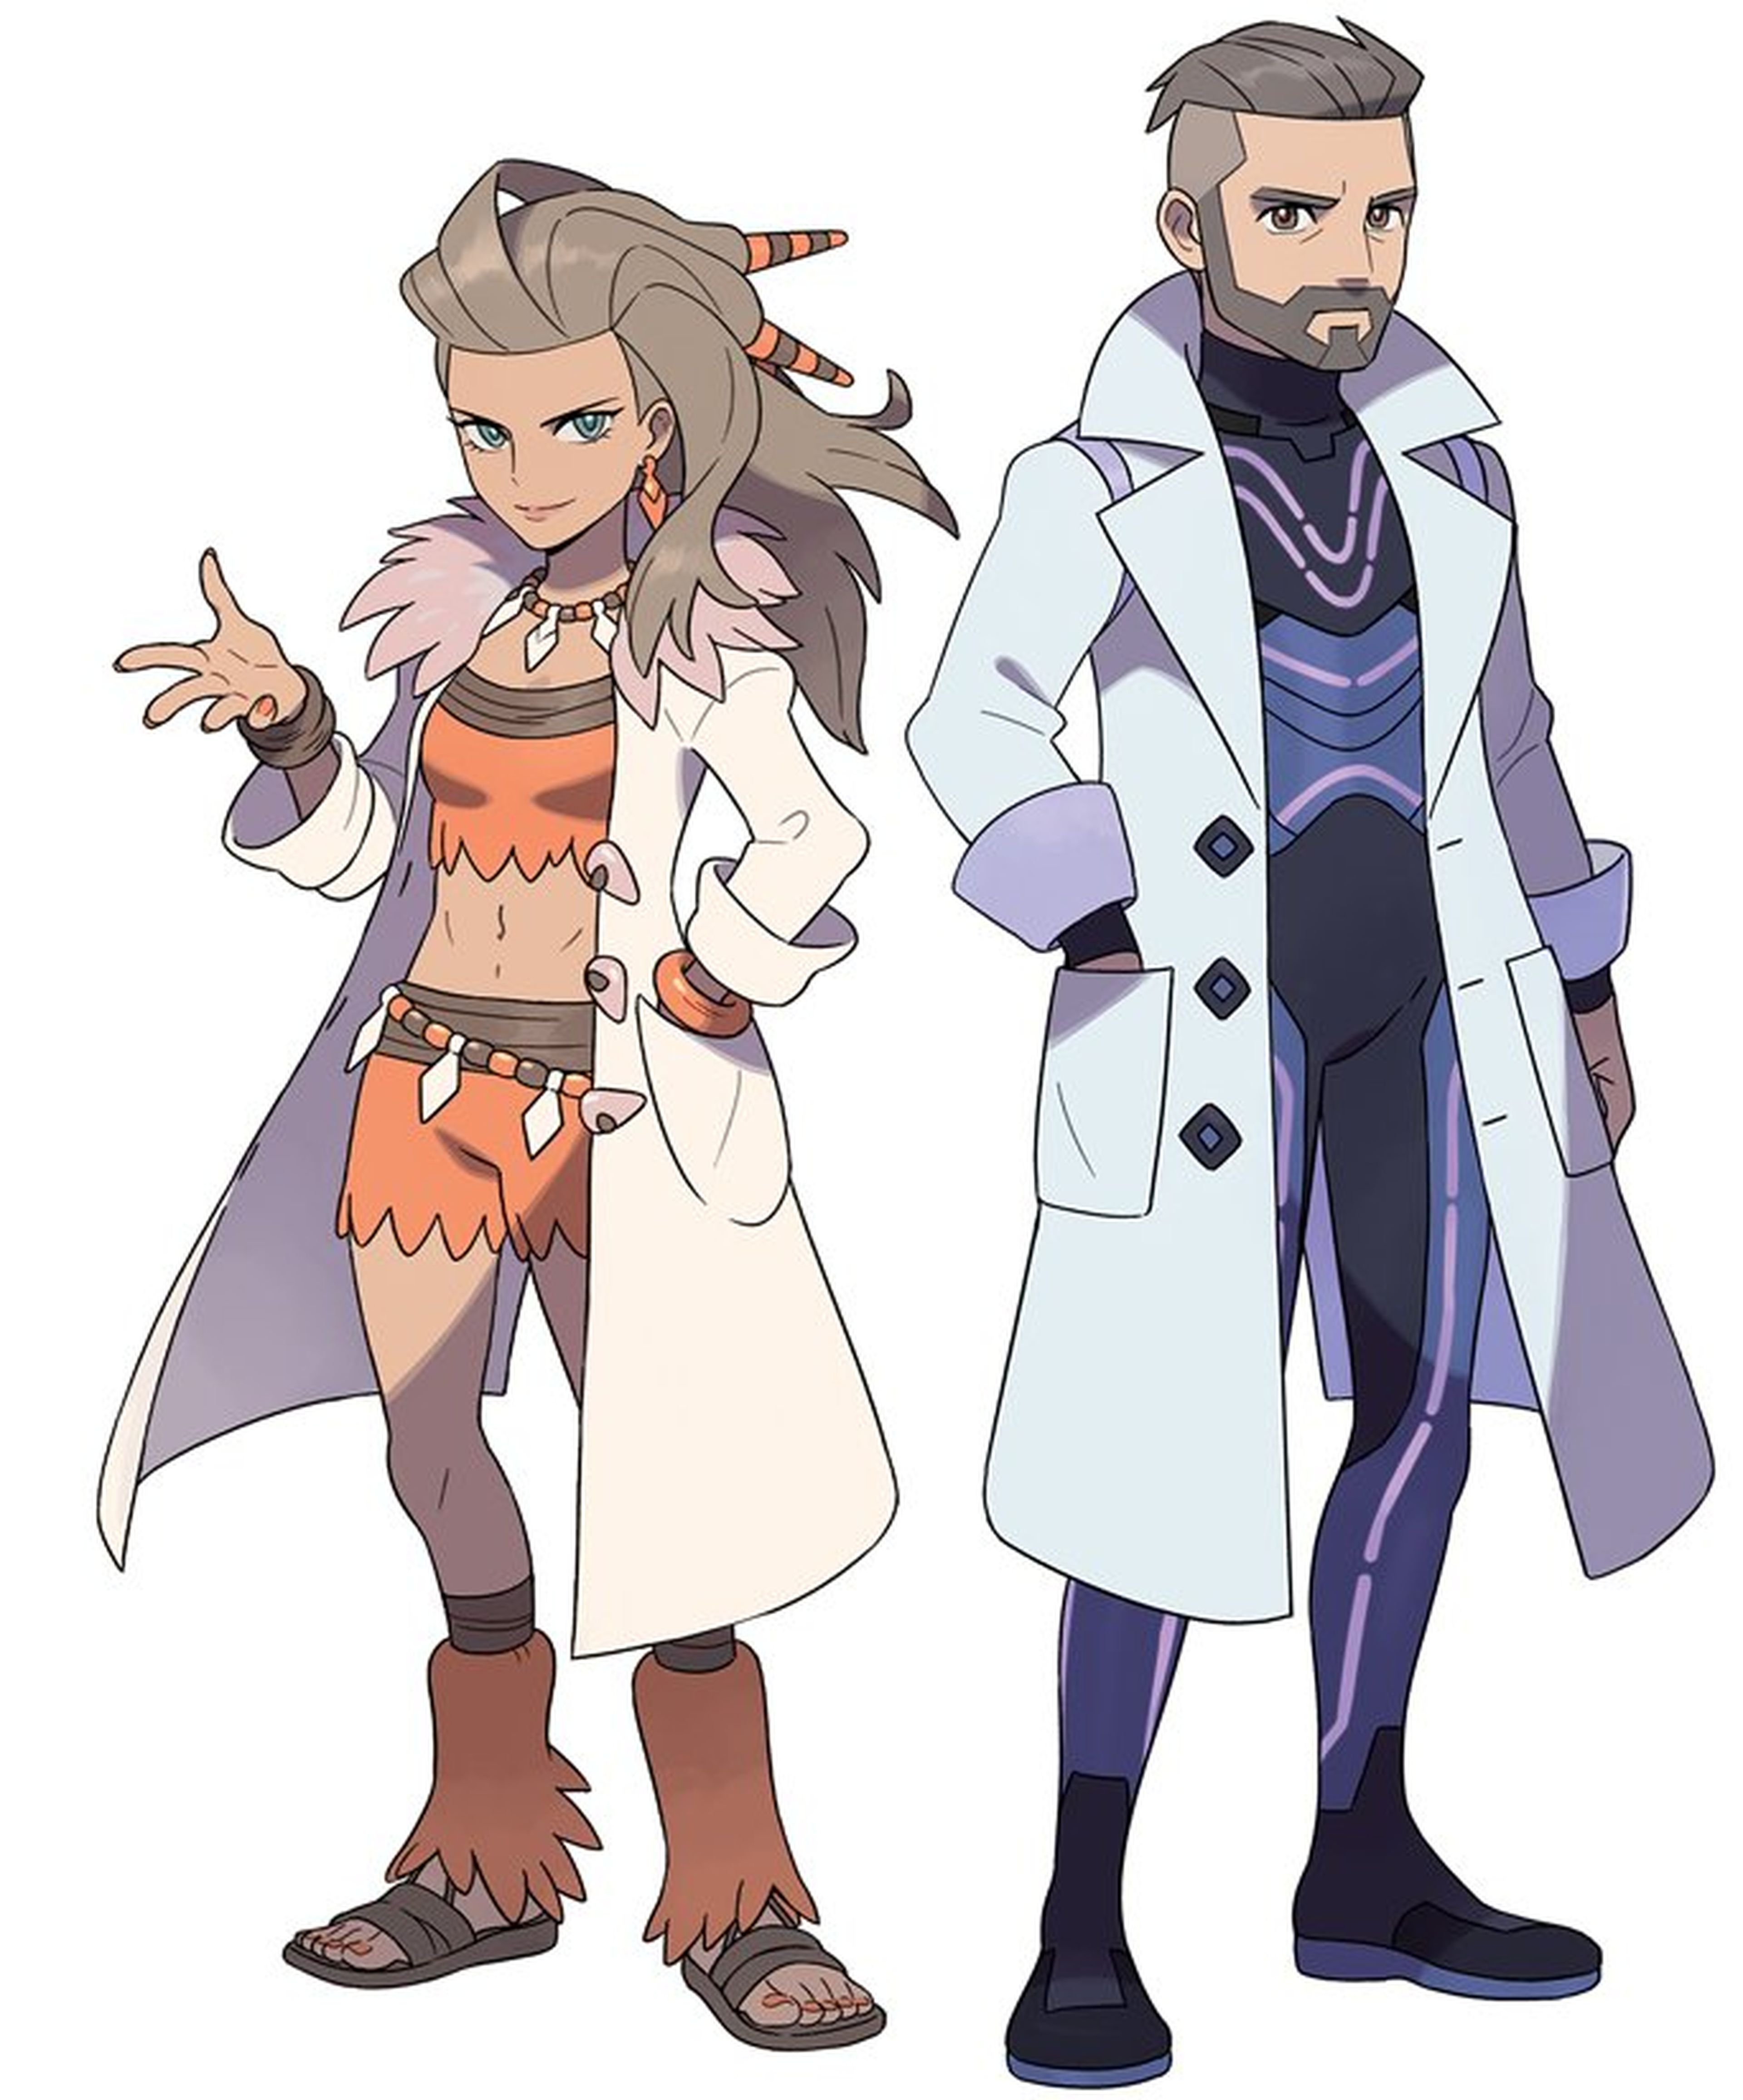 Pokémon Escarlata y Púrpura' presenta a sus legendarios, muestra sus  portadas y confirma la fecha de lanzamiento en su nuevo tráiler